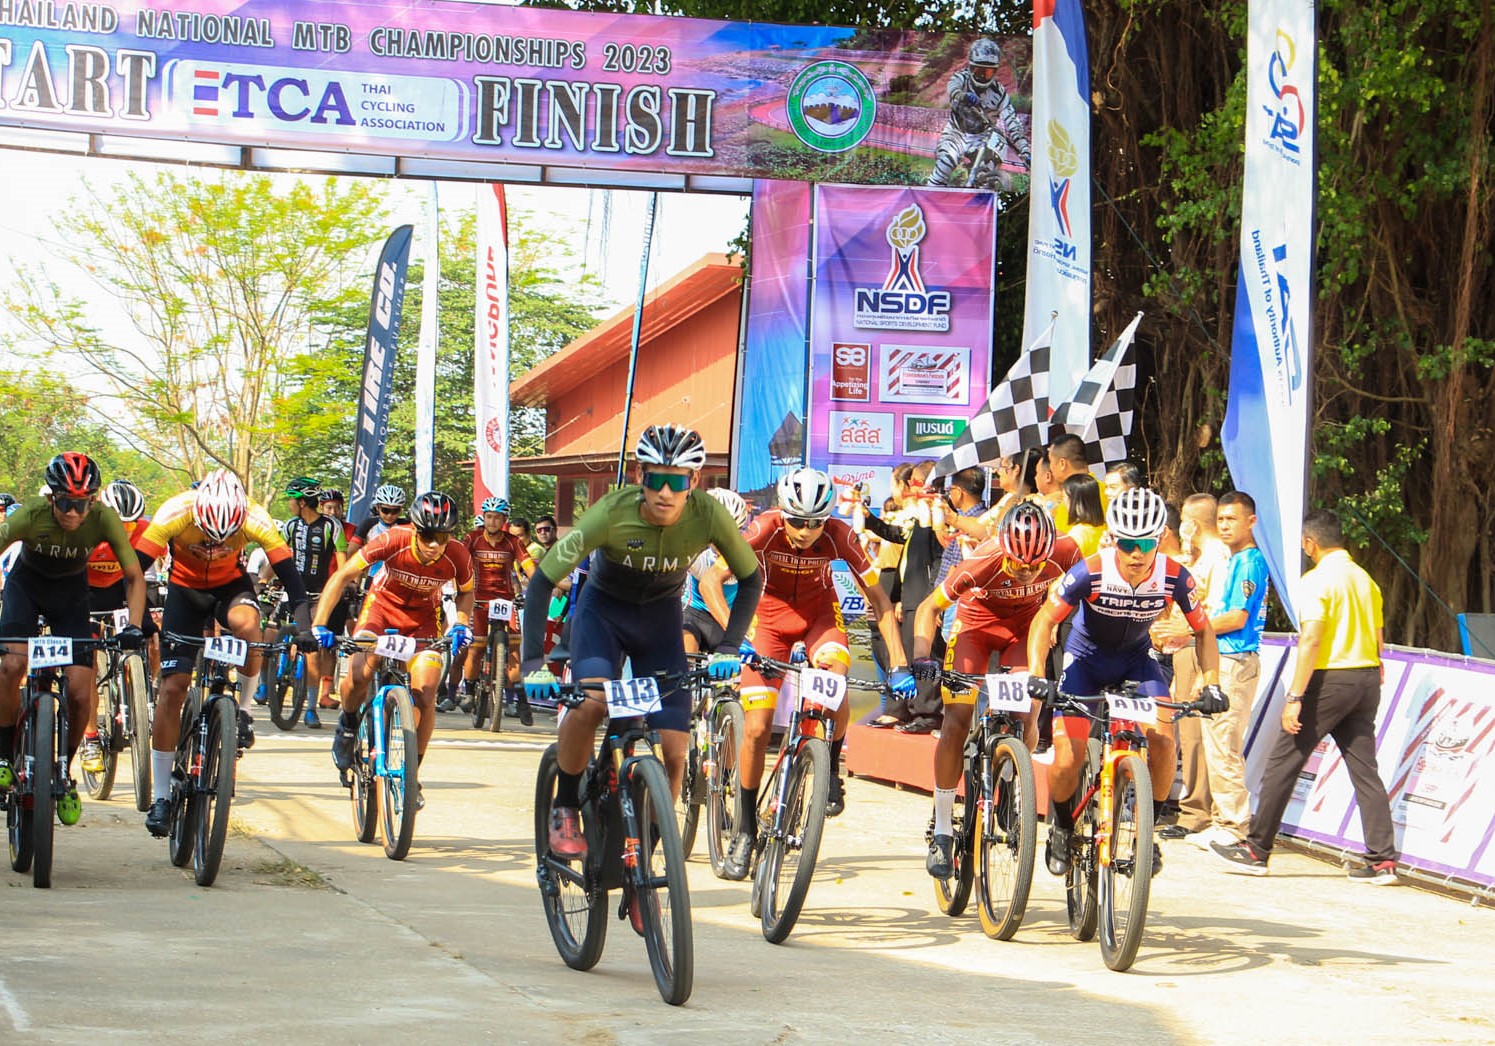 การแข่งขันจักรยานประเภทถนน ชิงแชมป์ประเทศไทย ชิงถ้วยพระราชทานฯ และการแข่งขันจักรยานเมาเท่นไบค์ ชิงแชมป์ประเทศไทย ชิงถ้วยพระราชทาน ฯ สนามที่ 5 ประจำปี 2566